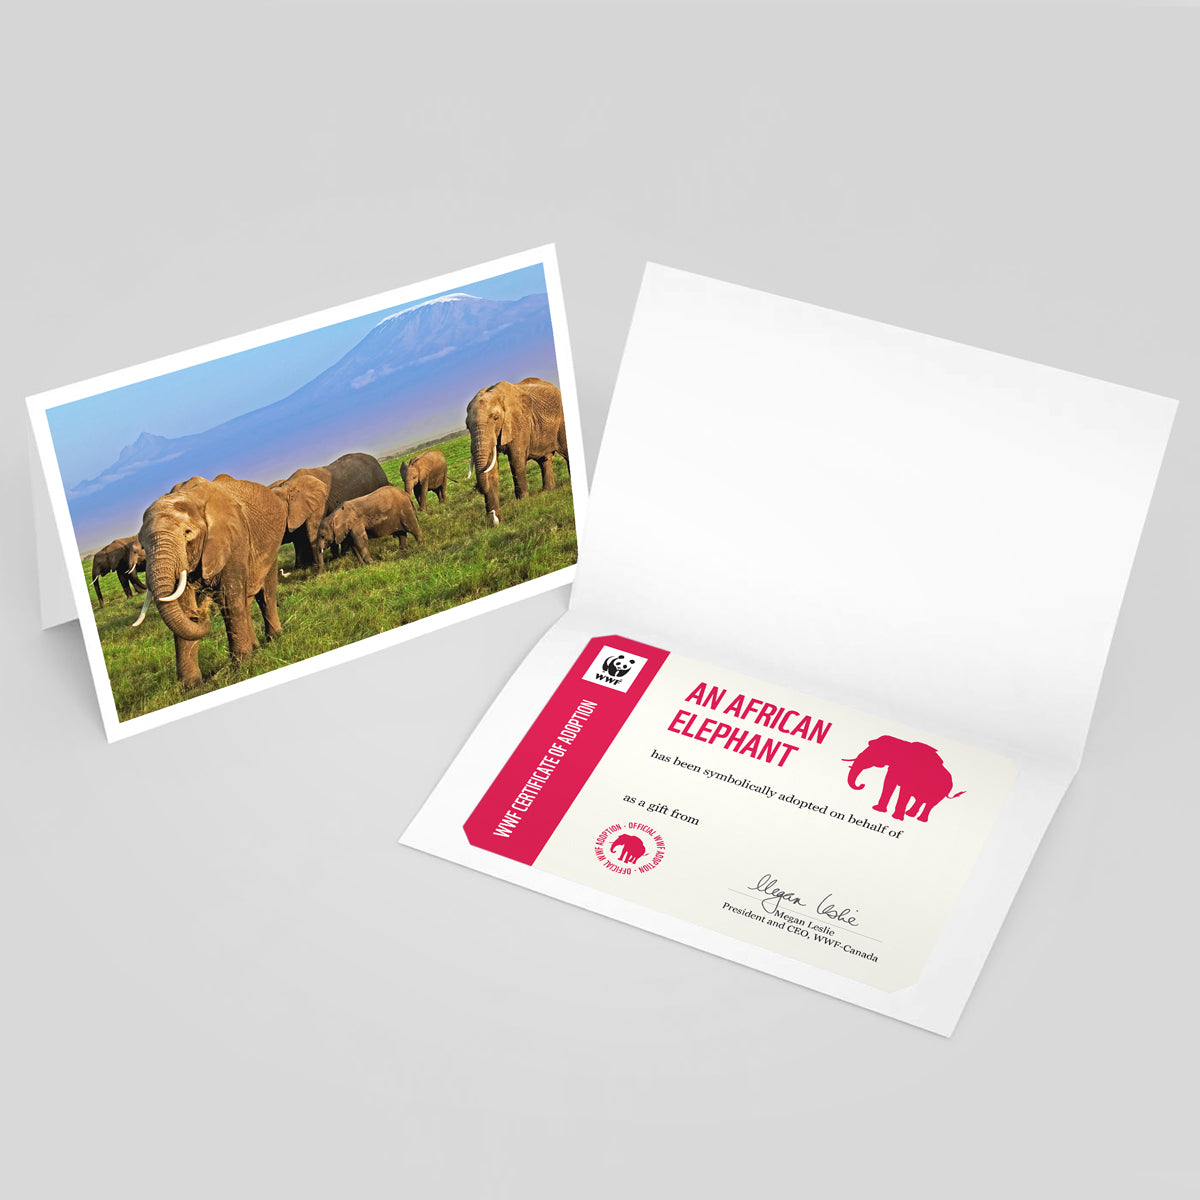 African elephant adoption card - WWF-Canada